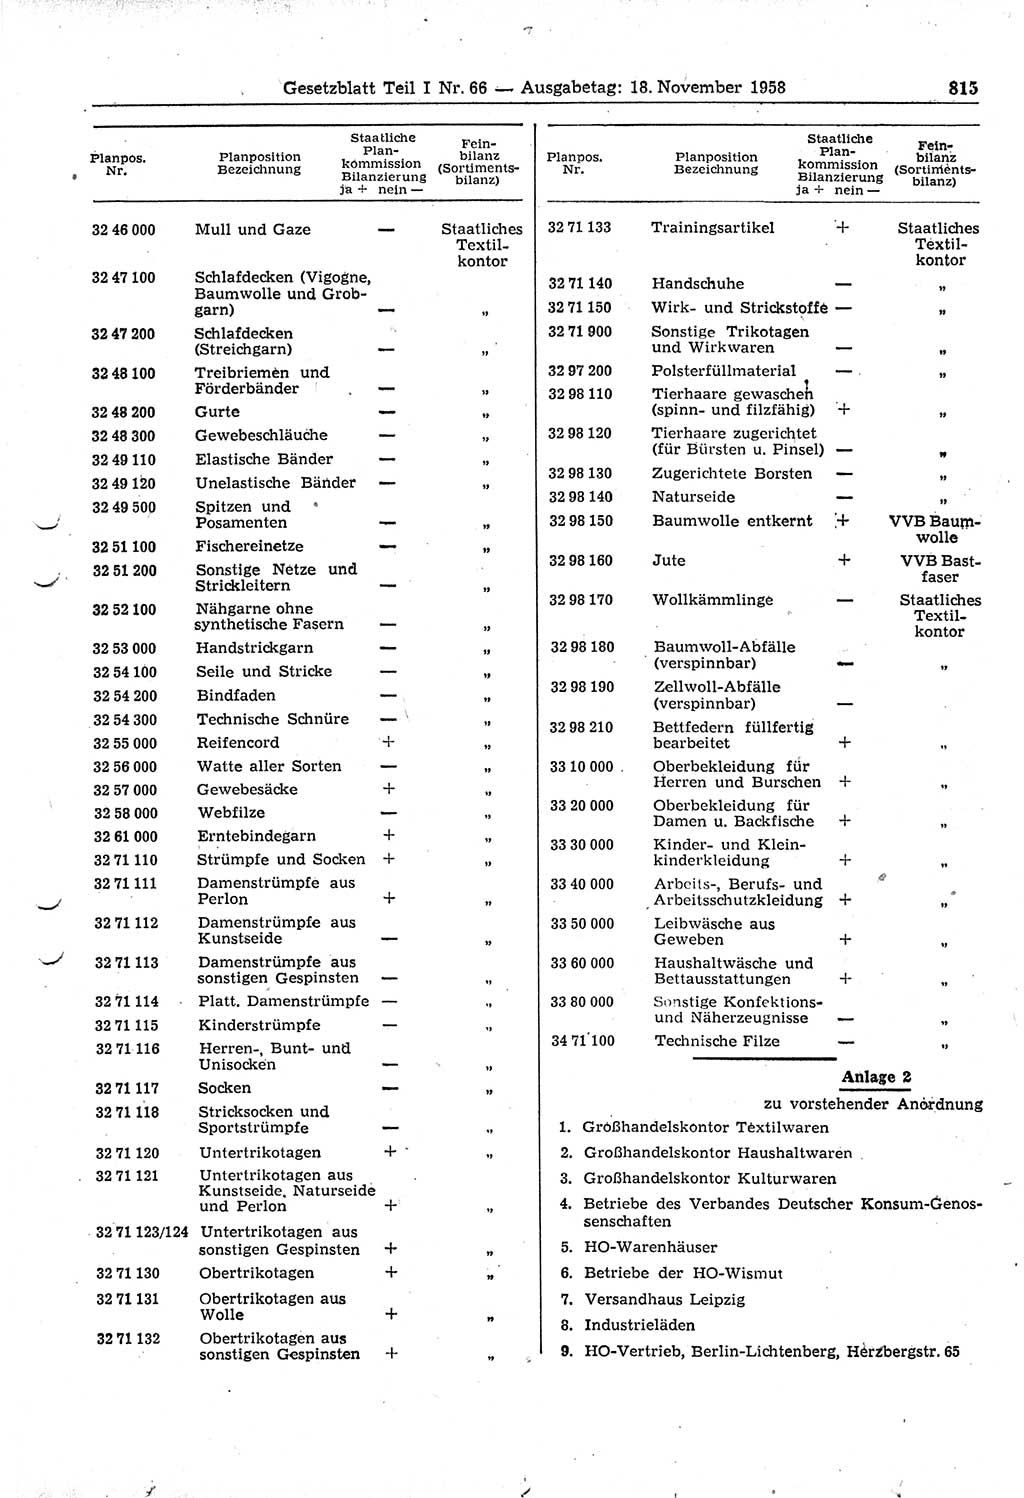 Gesetzblatt (GBl.) der Deutschen Demokratischen Republik (DDR) Teil Ⅰ 1958, Seite 815 (GBl. DDR Ⅰ 1958, S. 815)